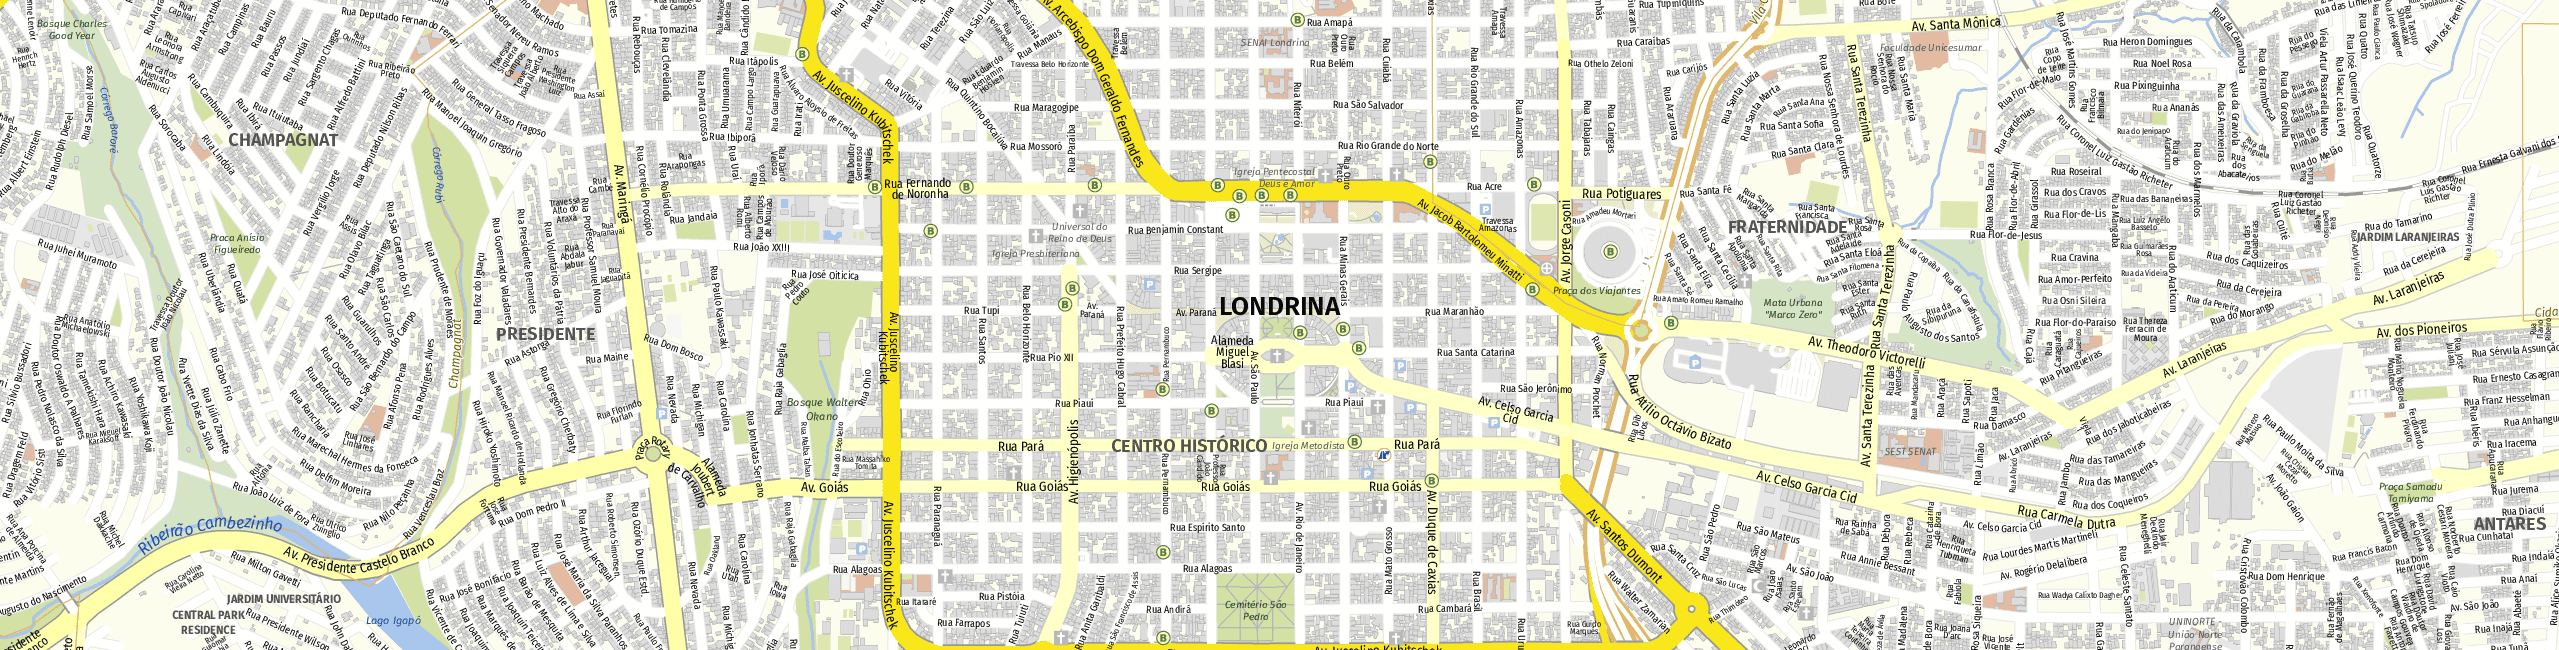 Stadtplan Londrina zum Downloaden.